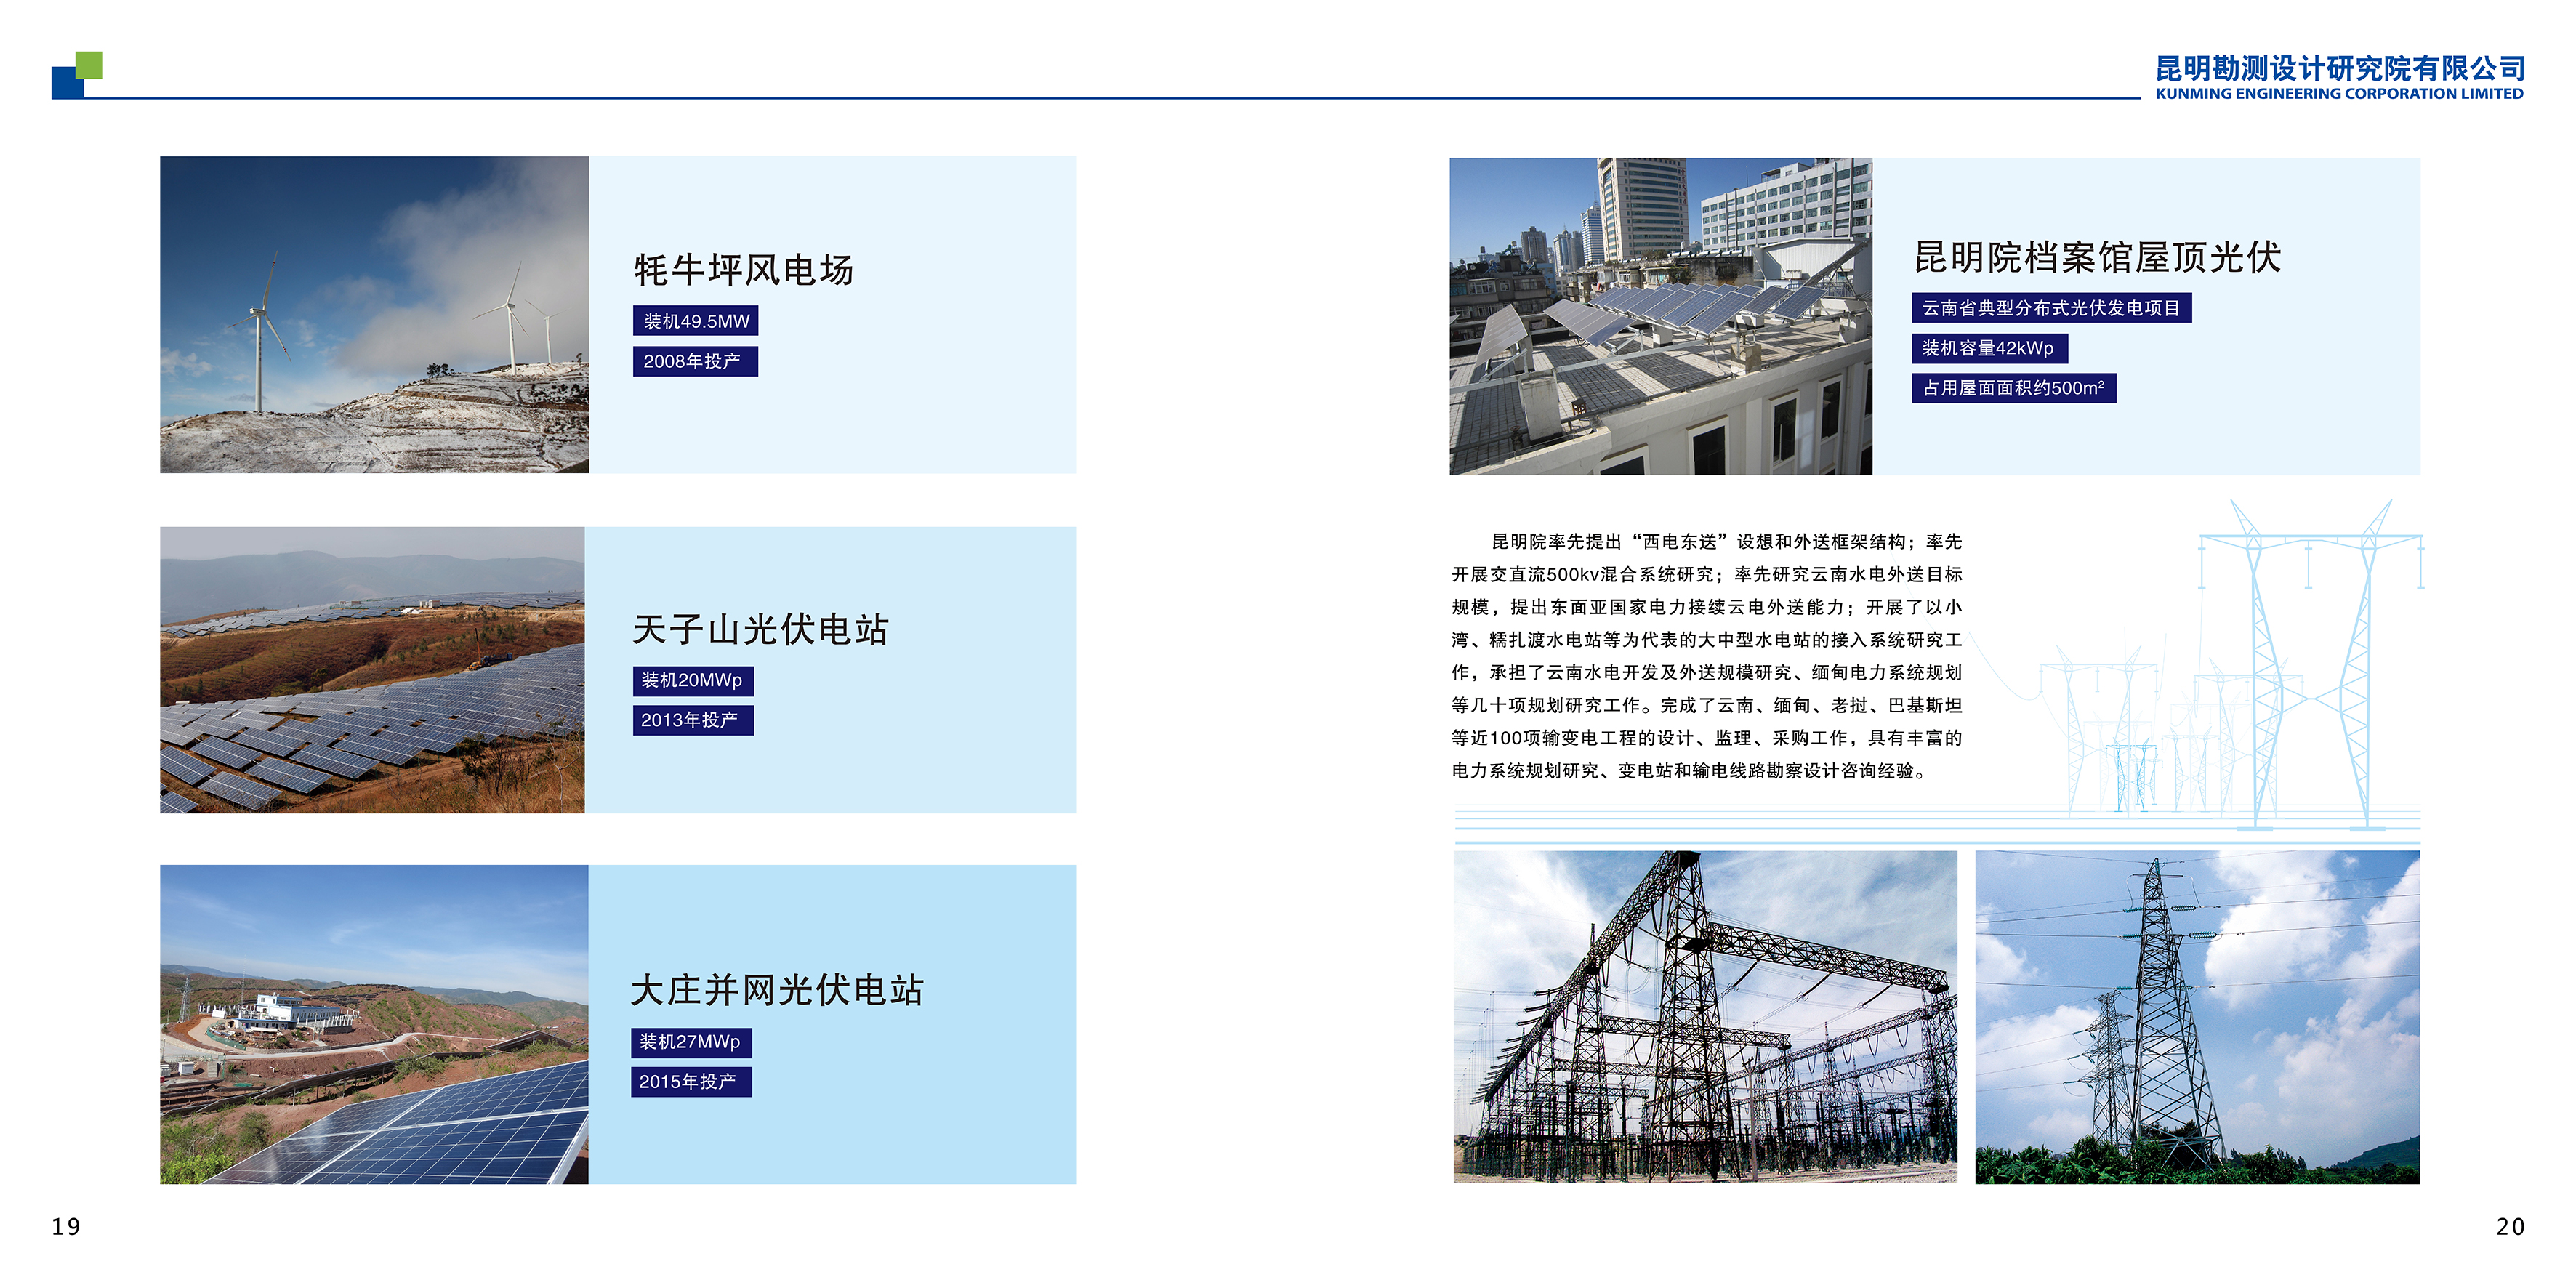 三、中国电建集团昆明勘测设计研究院宣传画册_13.png